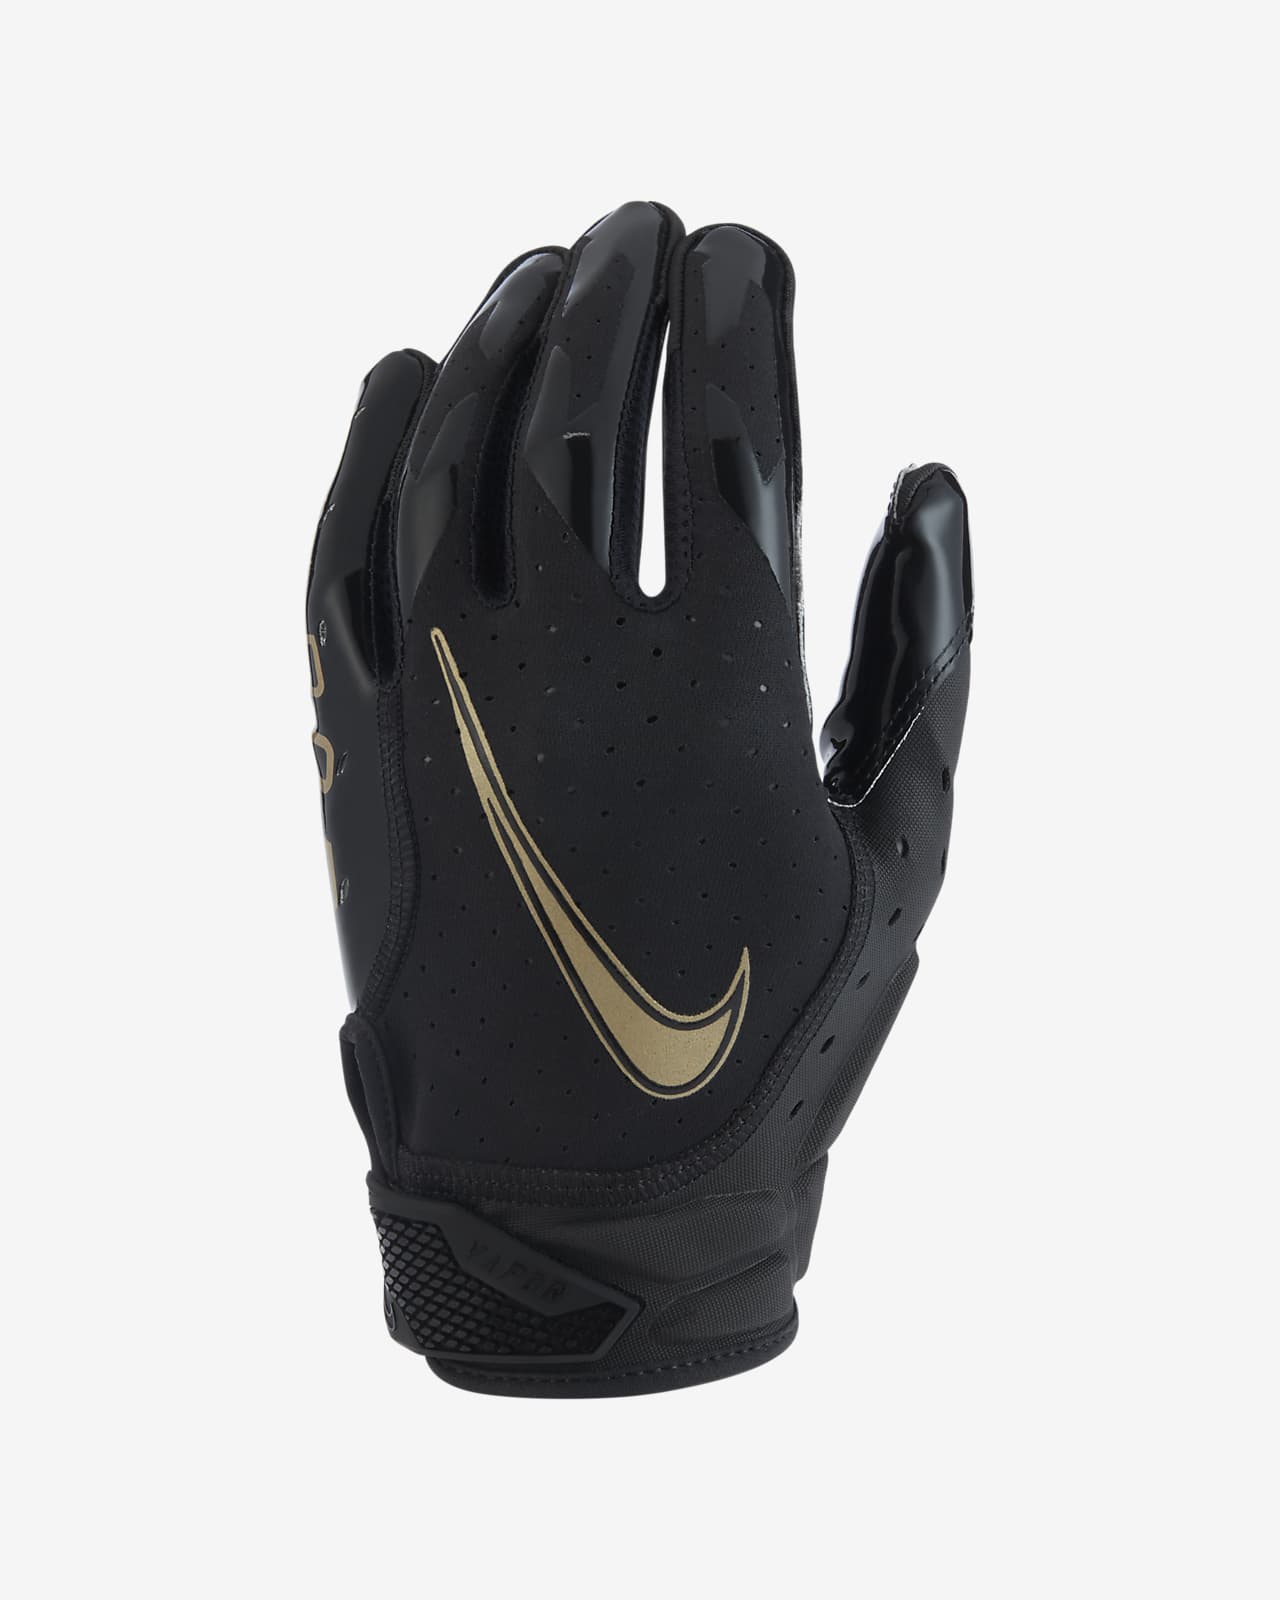 Nike Vapor Jet 6.0 Football Gloves 